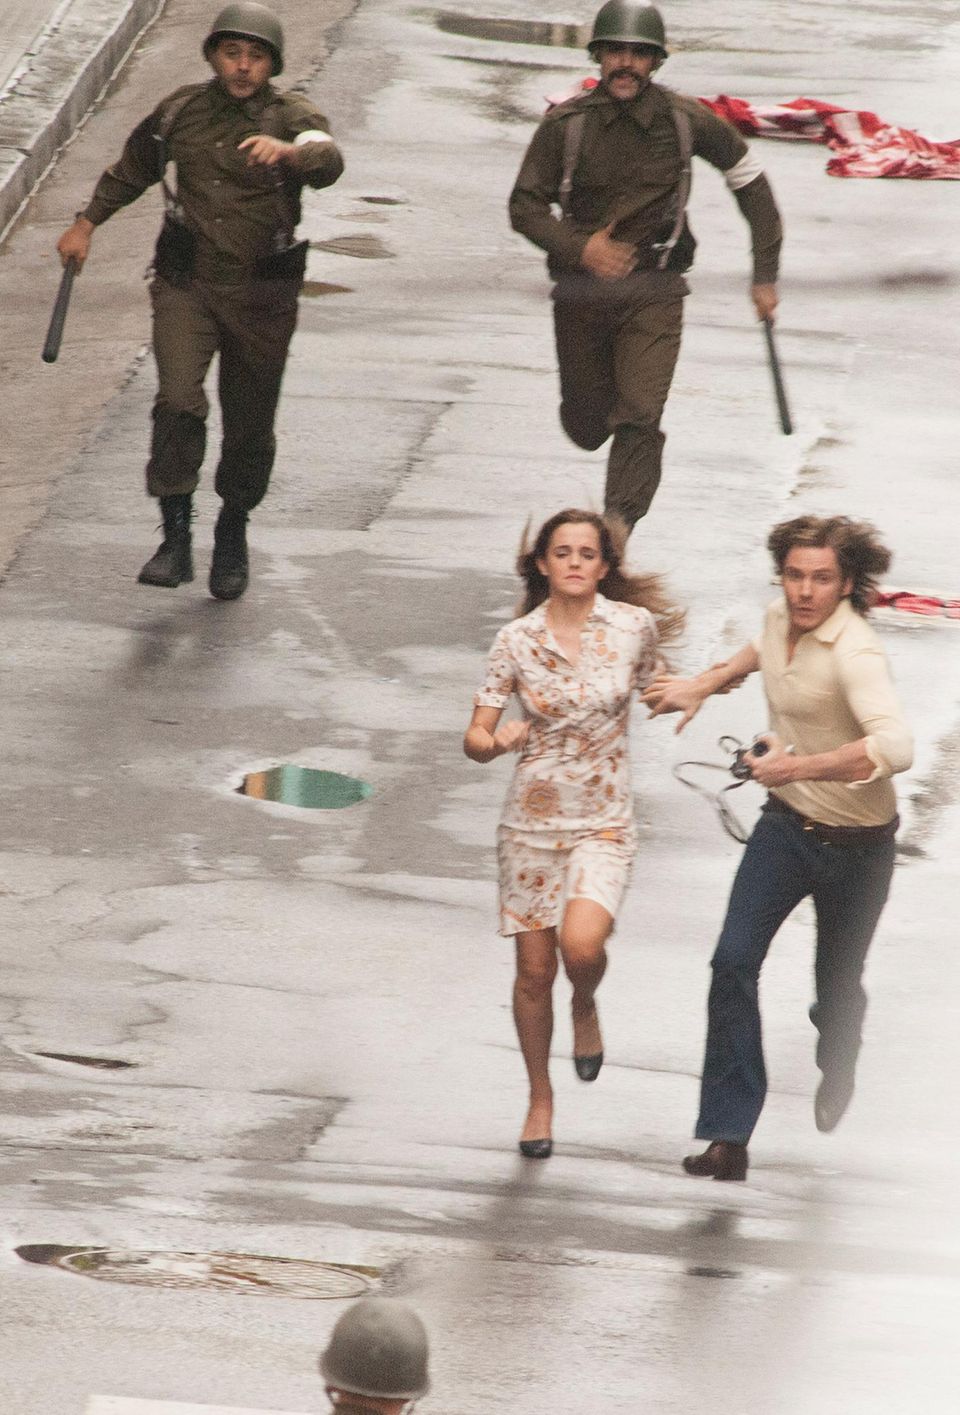 8. Dezember 2014: Emma Watson und Daniel Brühl stehen für den Film "Colonia Dignidad" gemeinsam vor der Kamera. Er handelt von der Diktatur in Chile zwischen 1973 und 1990.